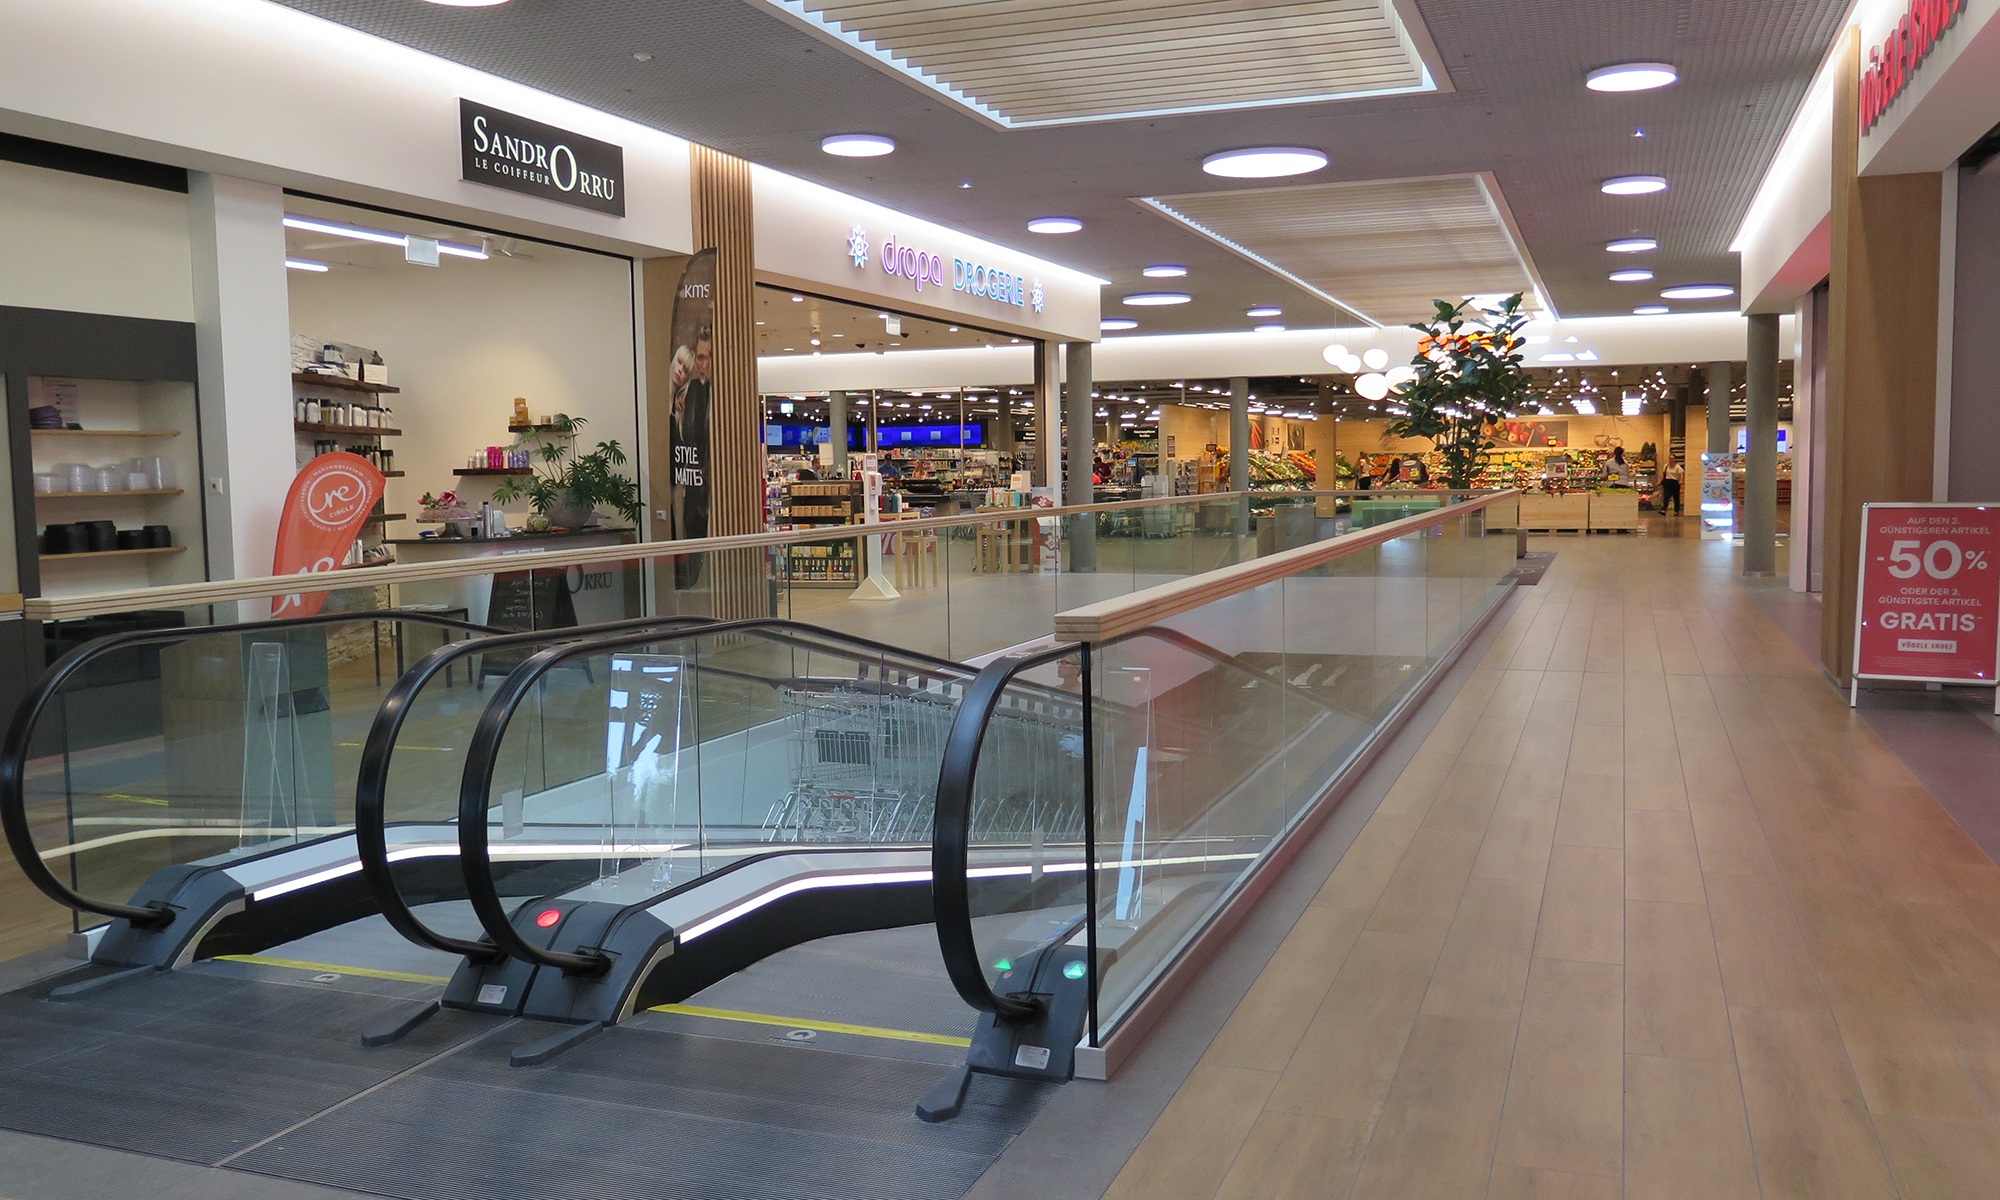 Im Eingangsbereich des Coop Super Centers Uzwil mit den Eingängen zu den Geschäften sowie Rolltreppen und Fussboden aus hellem Holz.